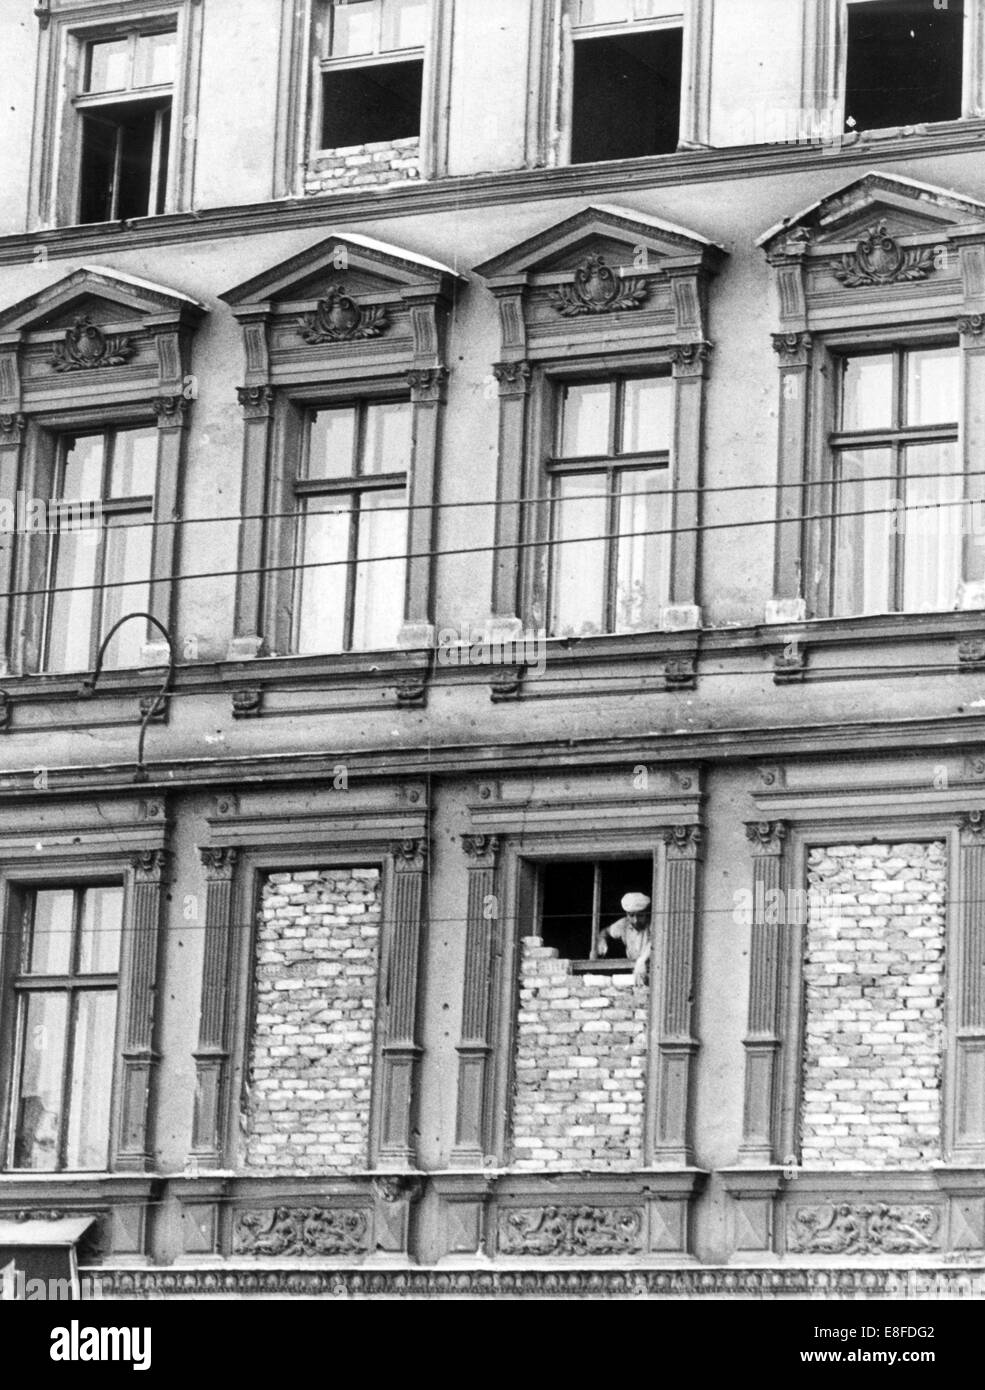 Une couche de brique de la RDA fonctionne sur une fenêtre, qui n'a pas encore été complètement murée, dans une maison en bordure de la rue Bernauer à Berlin le 1er octobre en 1961. Banque D'Images